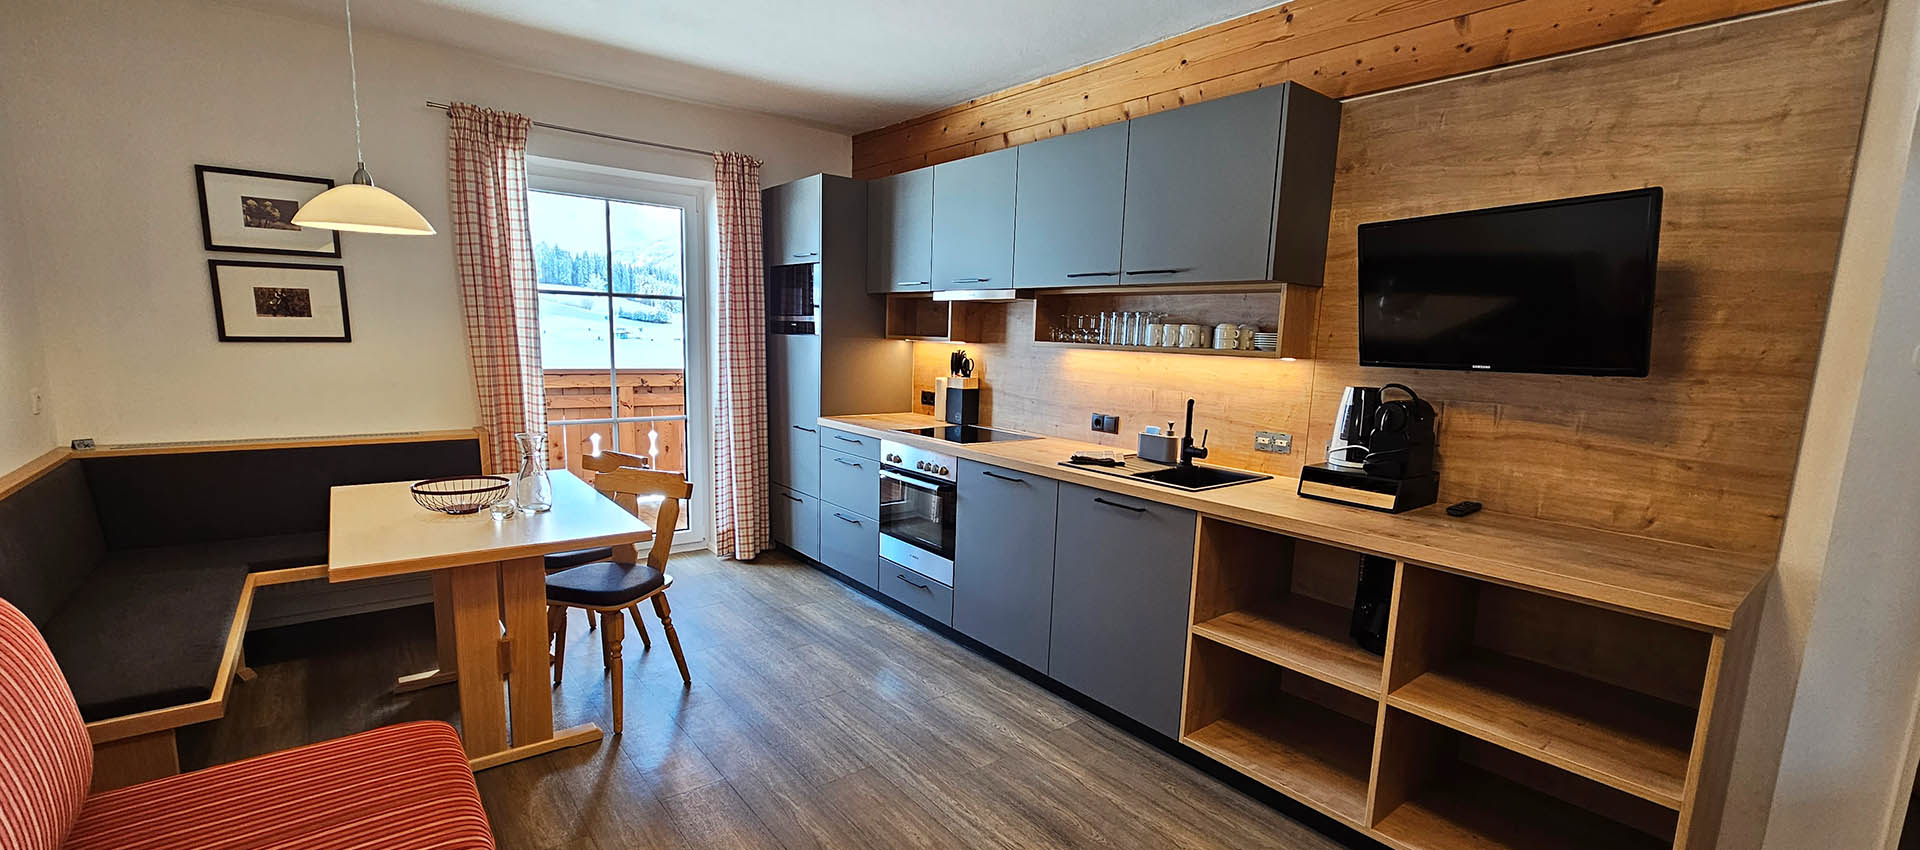 Neues Appartement in Flachau - Aparthotel Stadler im Salzburger Land